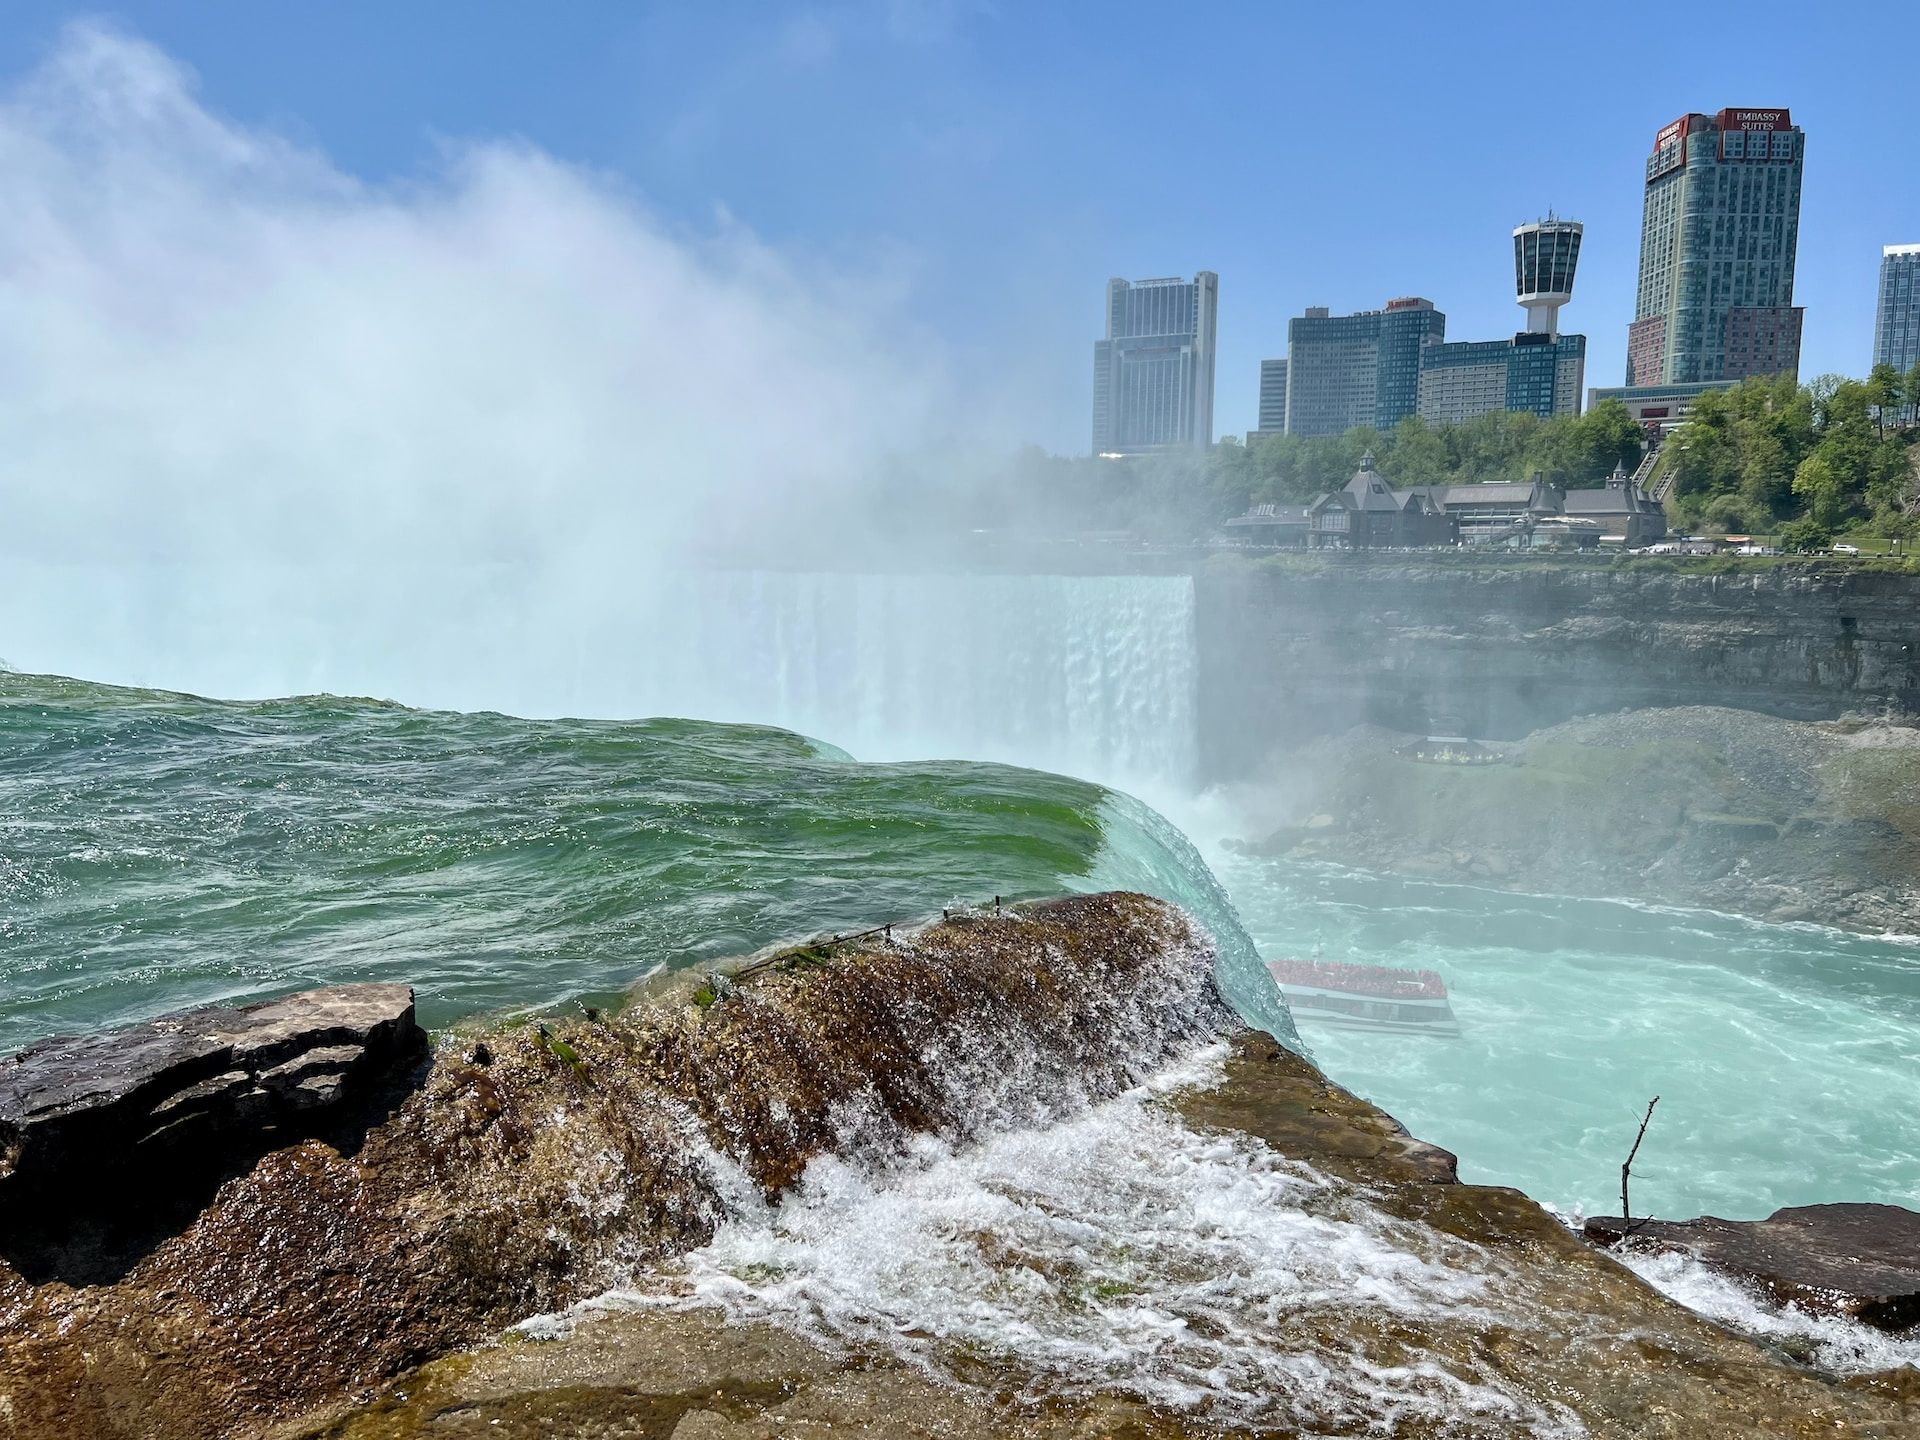 Widok na wodospad Niagara z budynkami miejskimi w tle, Nowy Jork, USA 